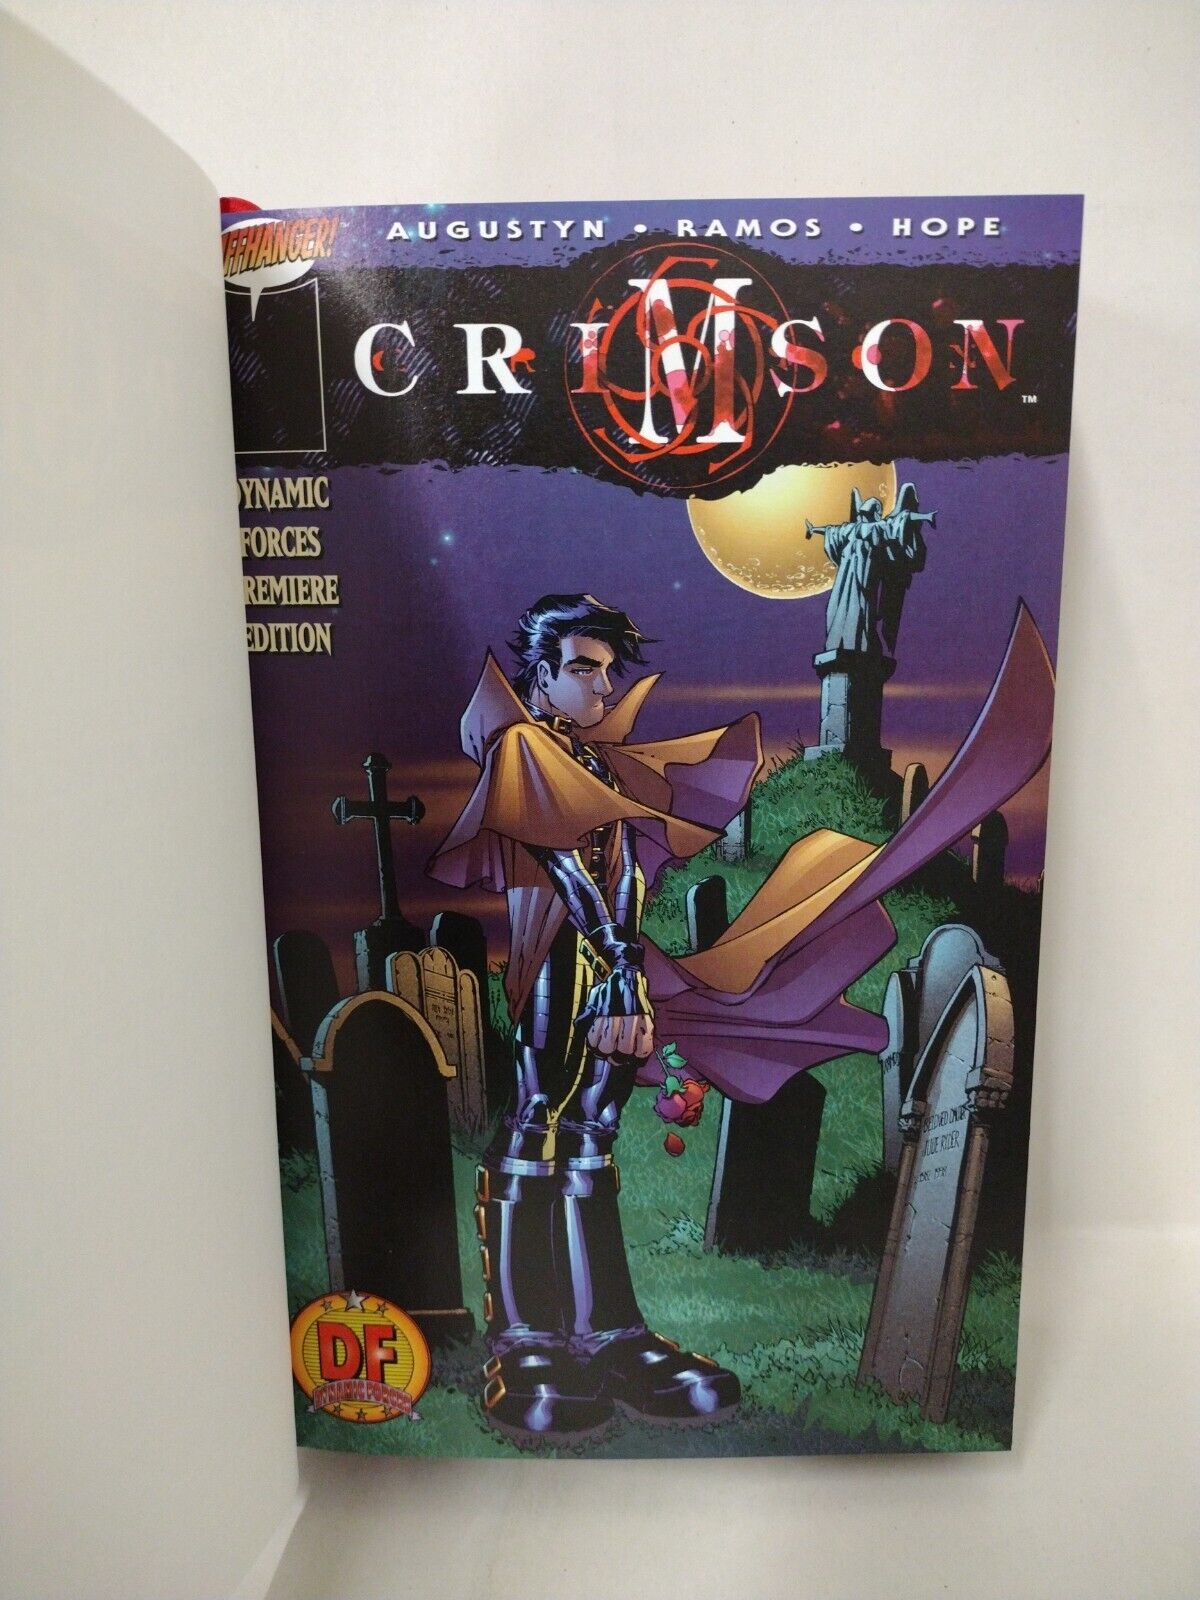 CRIMSON "Ominibus" 1998-2001 ARG Custom Bound Image Comic Omnibus HC W Card New